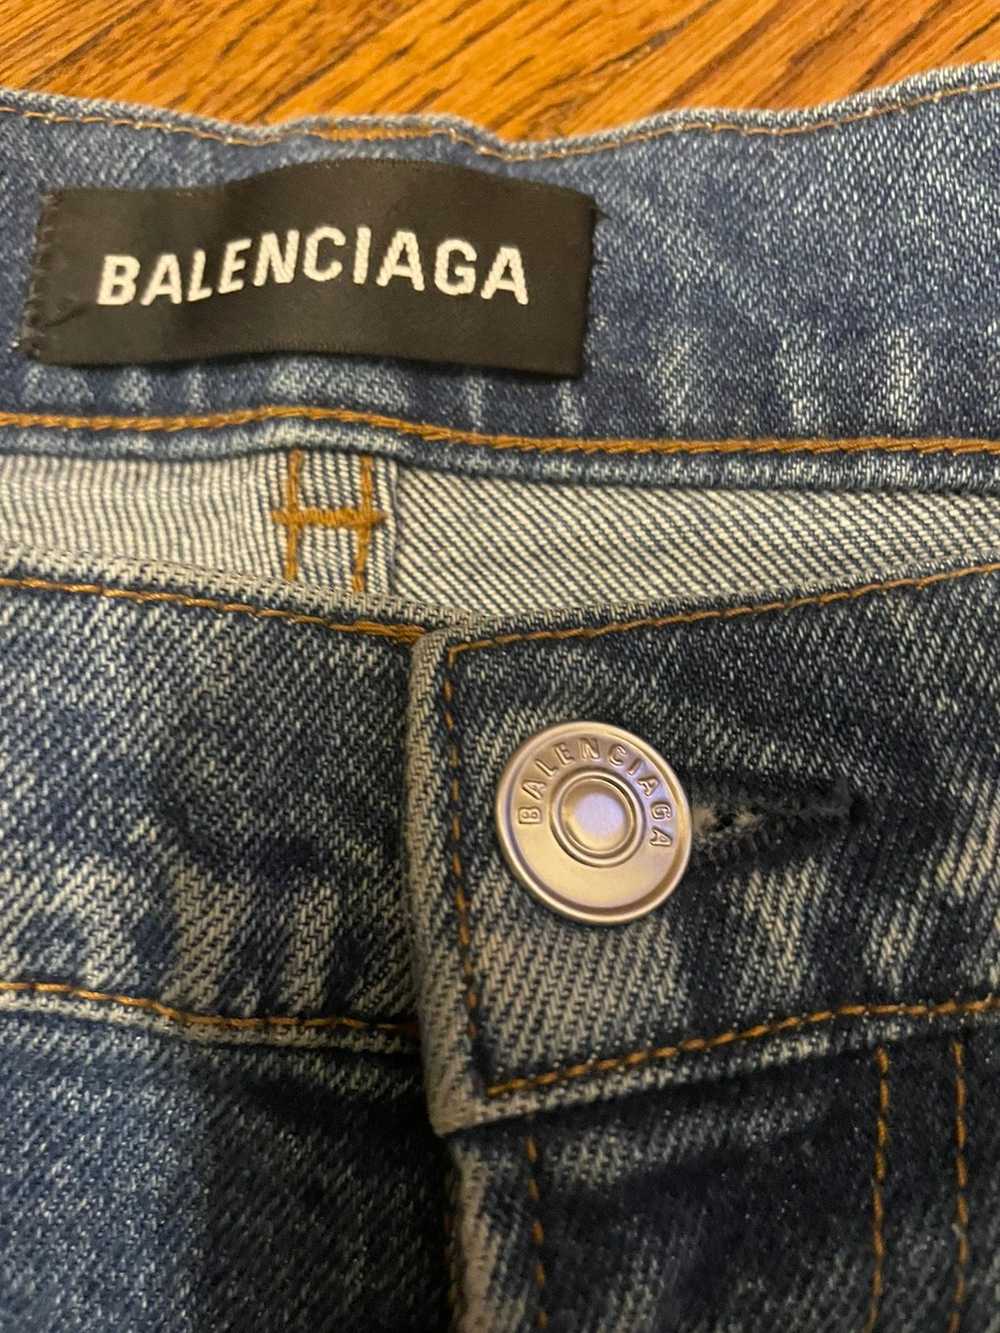 Balenciaga Balenciaga blue jeans - image 3